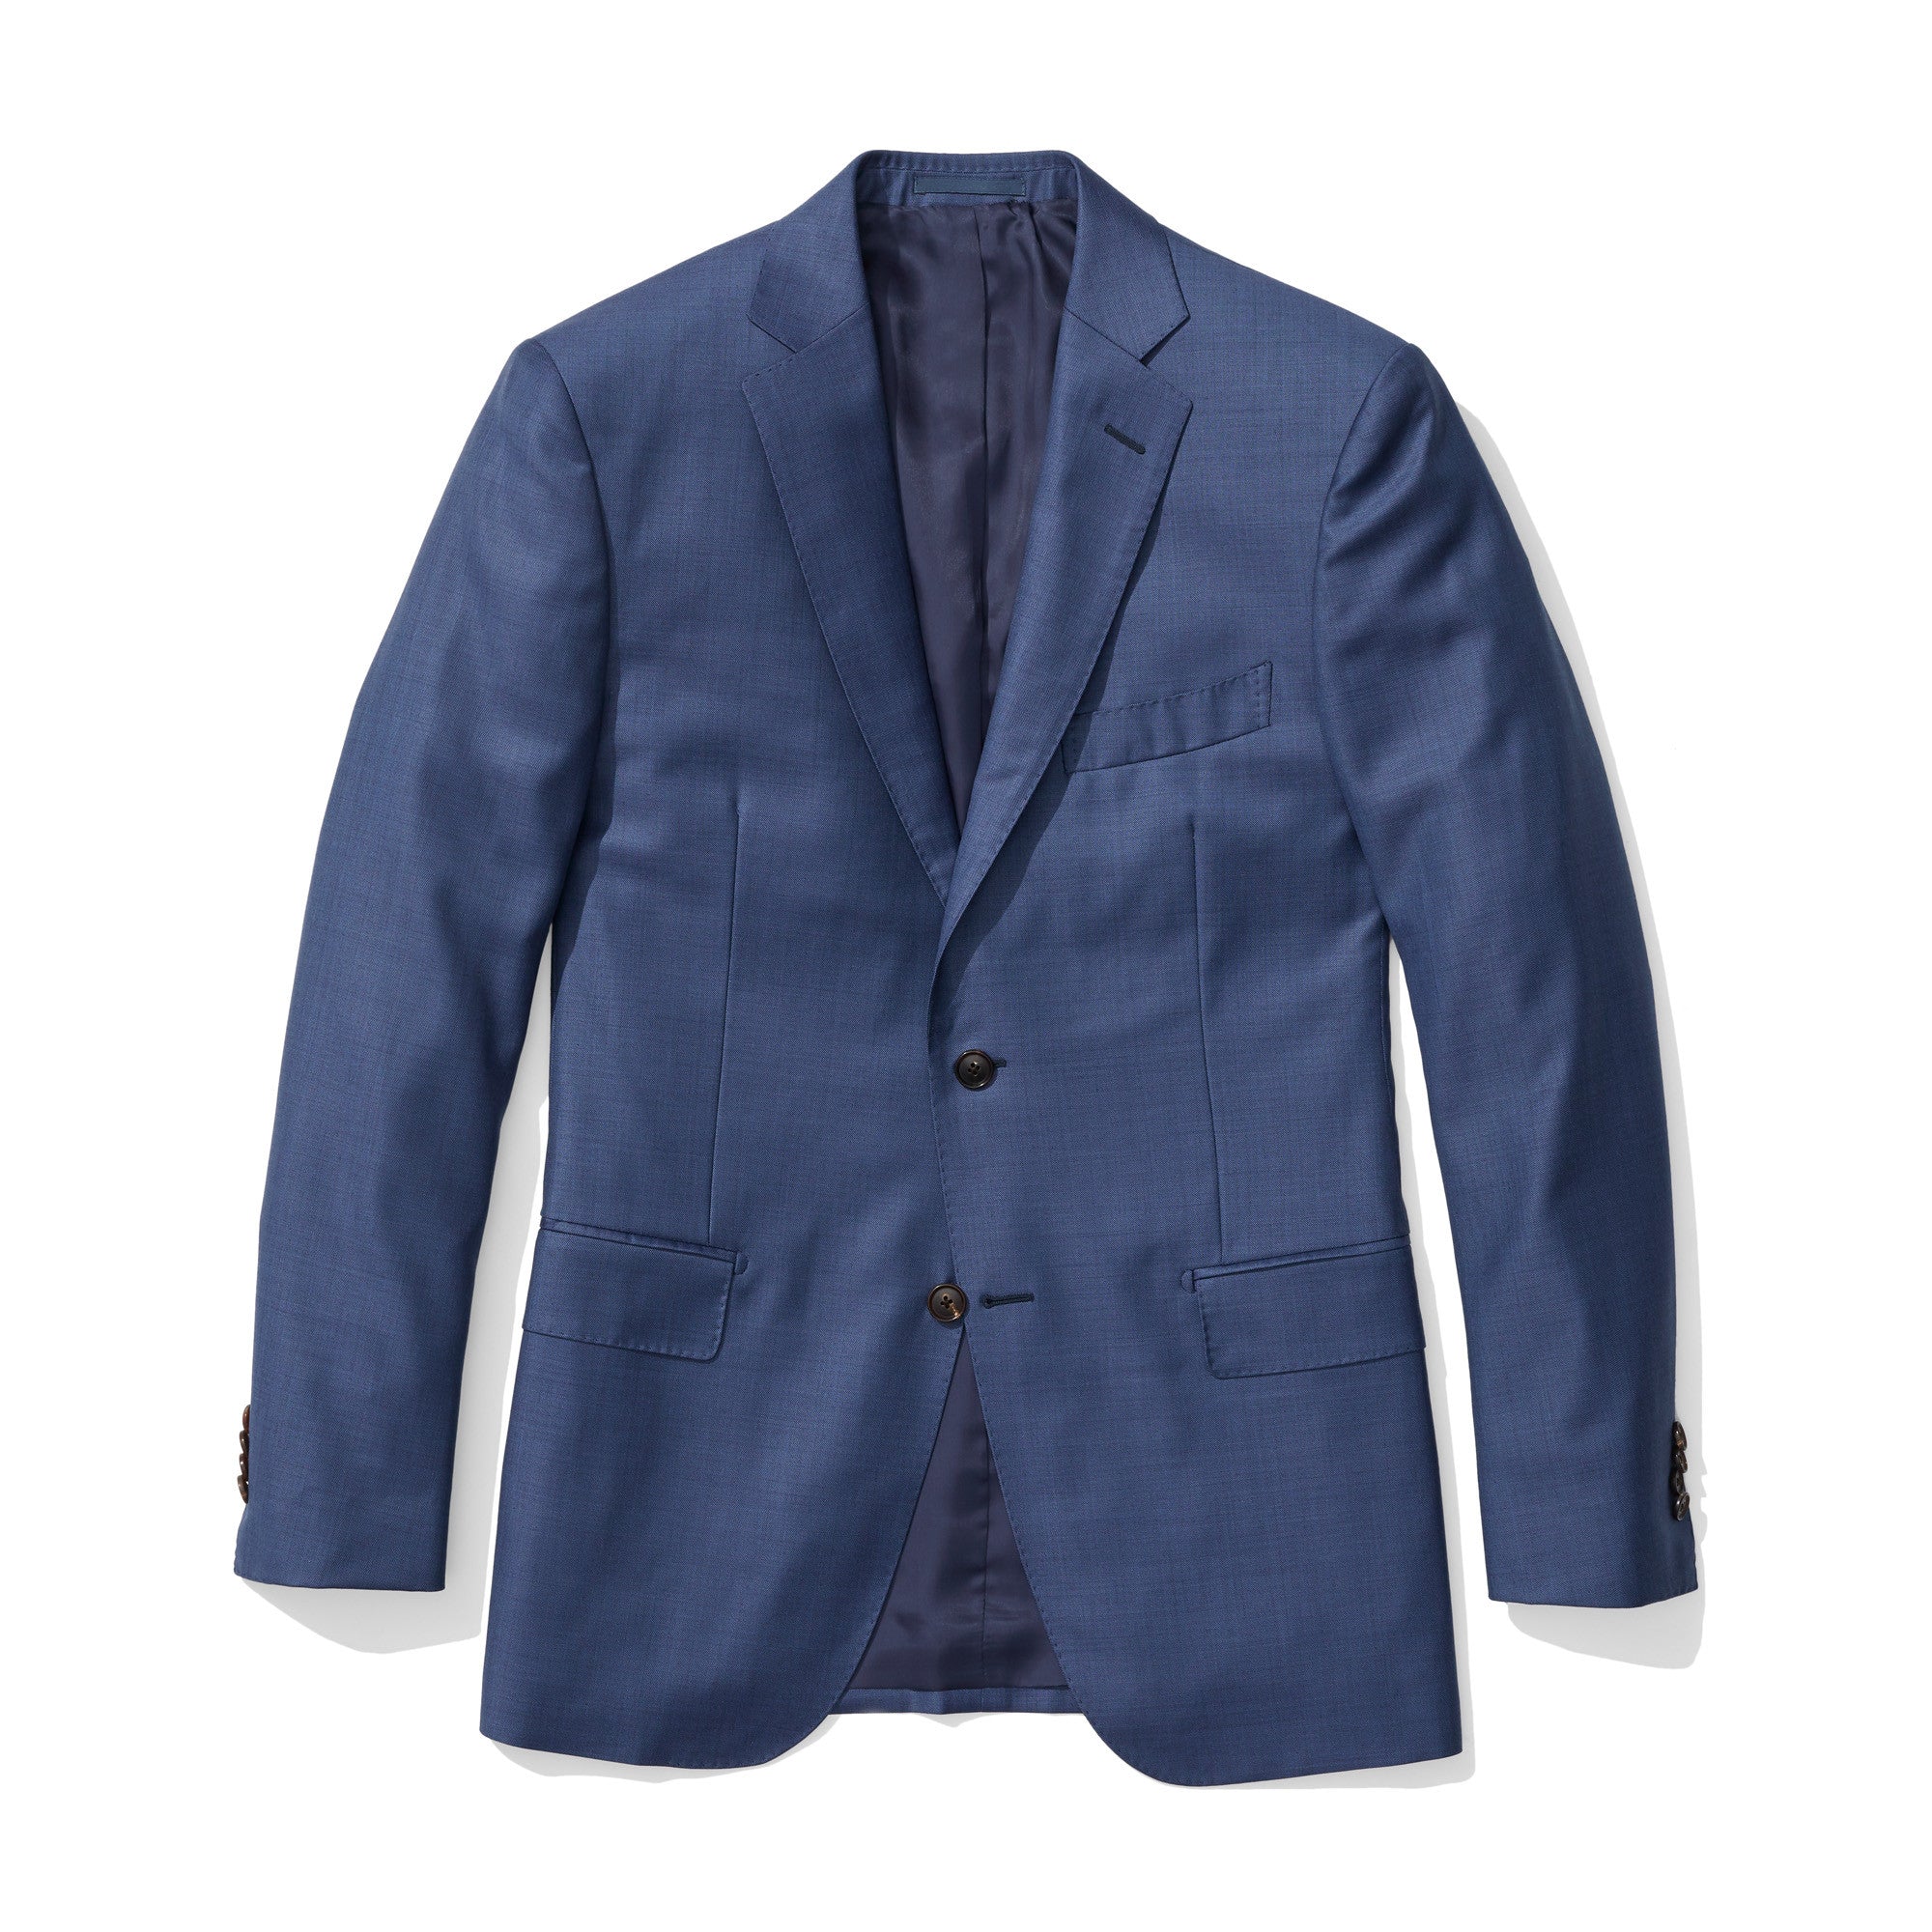 Murray - Blue Sharkskin Italian Wool Suit - Jomers